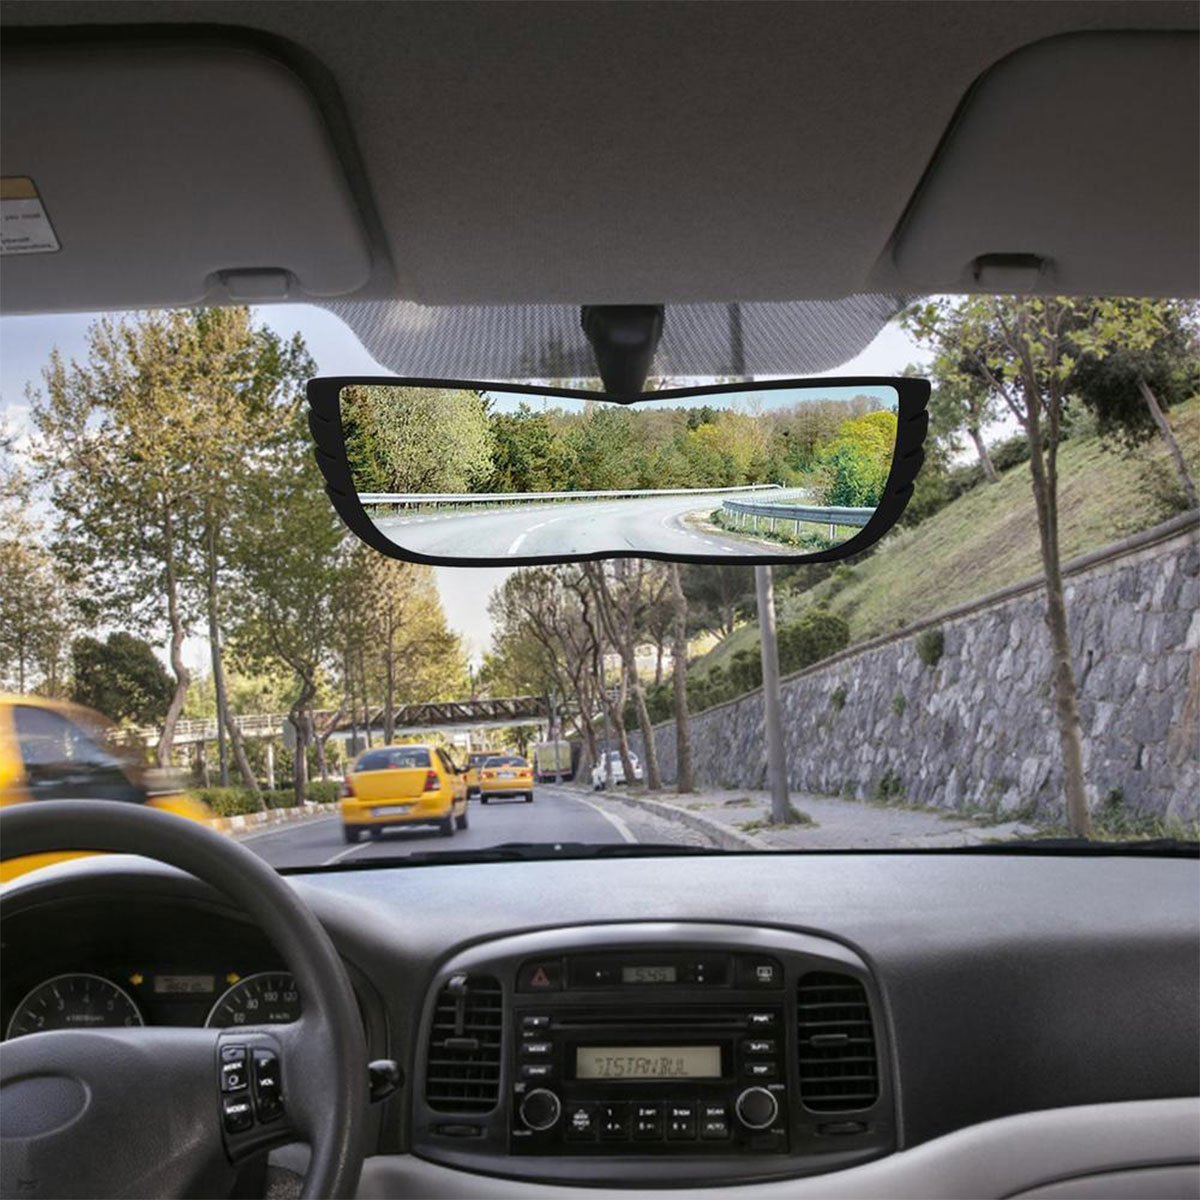 Espelho Retrovisor 160 Graus Carro Automotivo Caminhao Visao Ampla Panoramica Estrada Avenida Segura - 4